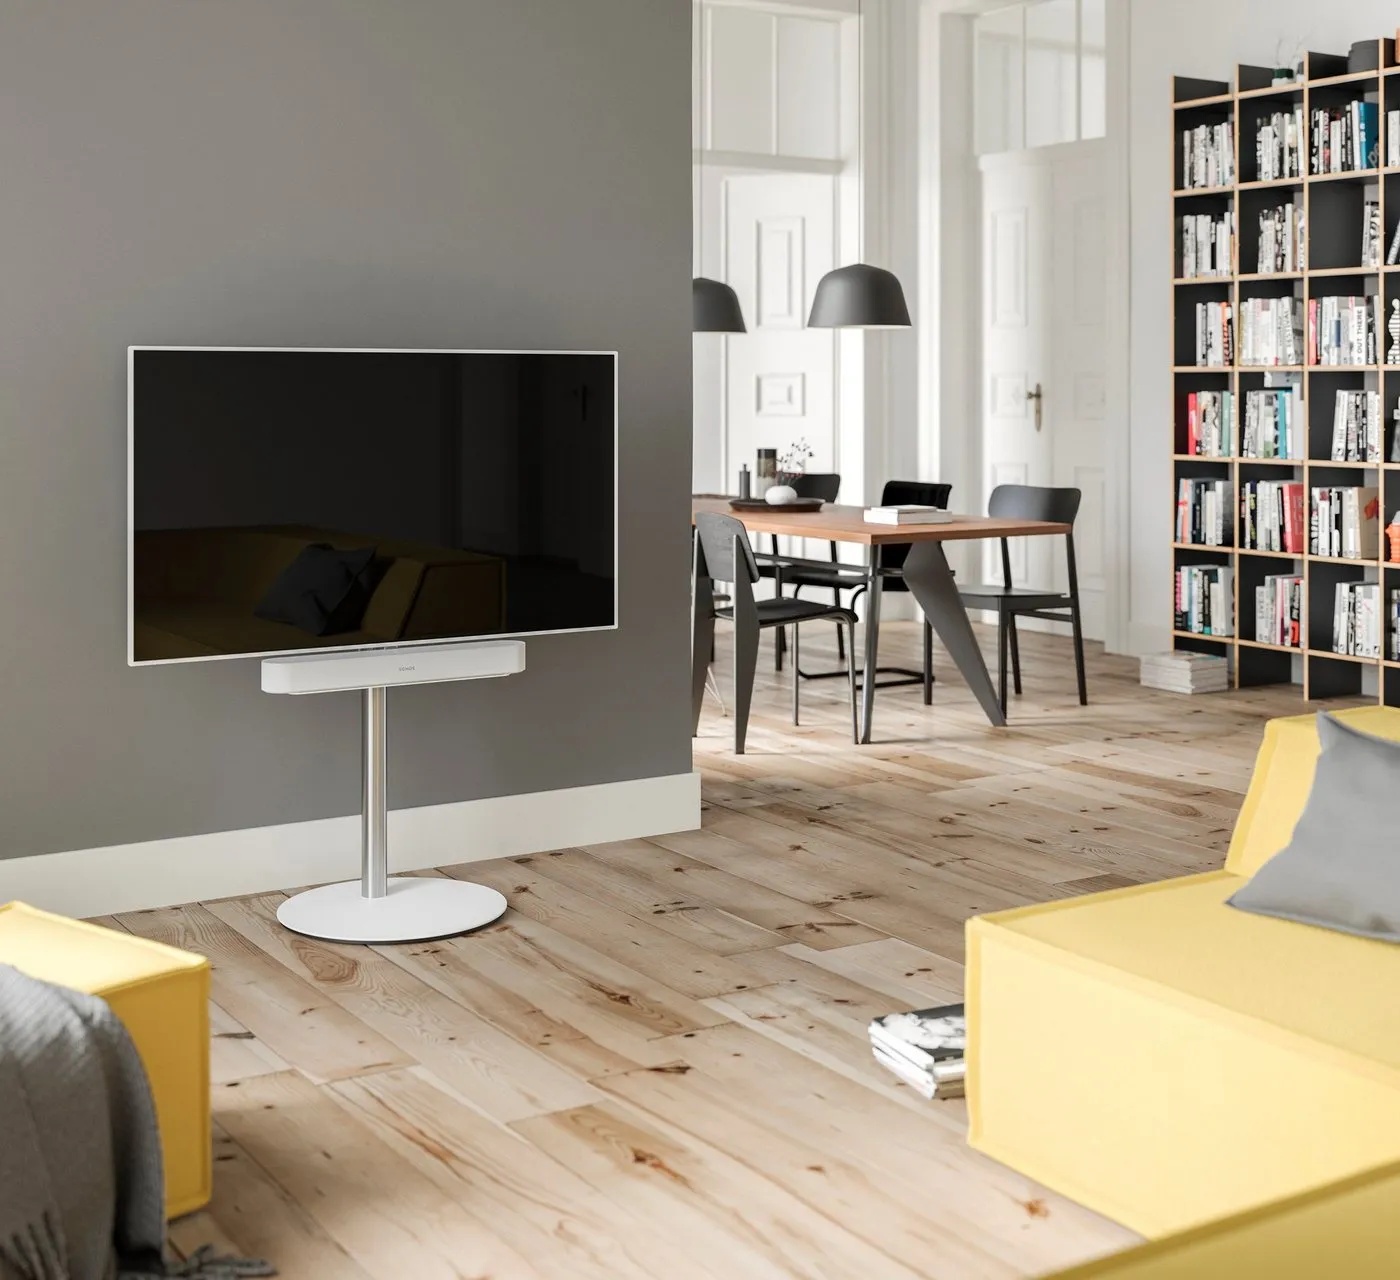 SPECTRAL Circle ist ein moderner wie auch edel anmutender TV-Stand mit drehbarer und höhenverstellbarer TV-Halterung. Stabile Sockelplatte aus Stahl mit satinierter Glasauflage. TV-Ständer, (für Bildschirme von 32'' bis 65) weiß